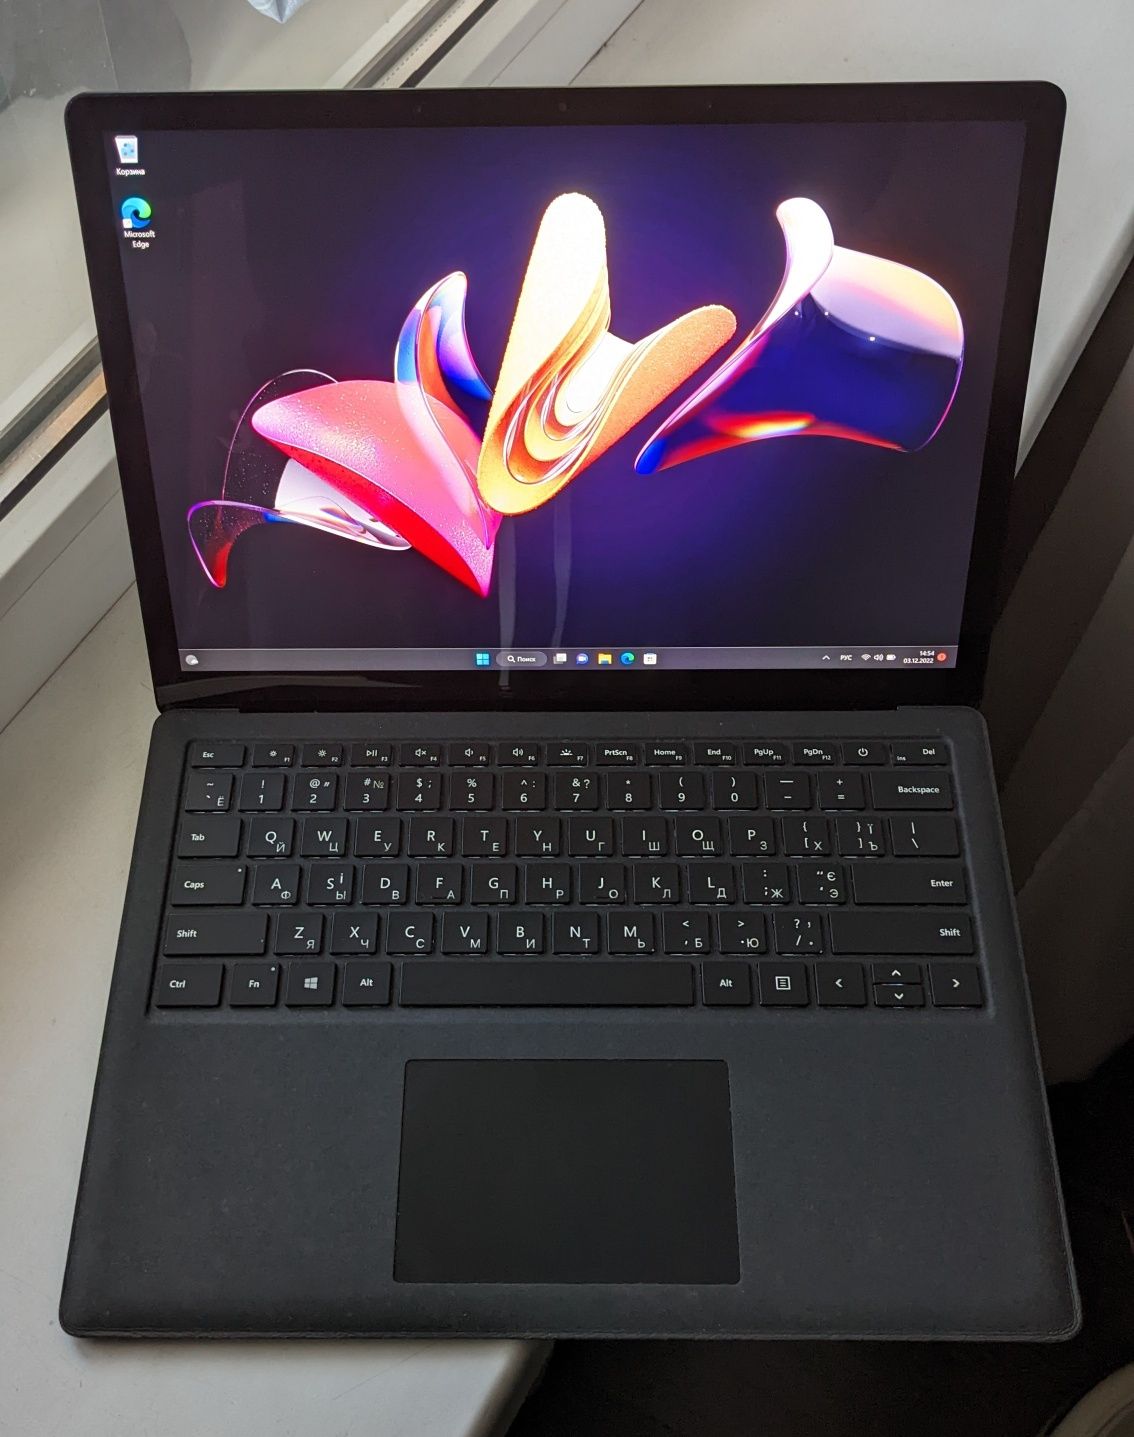 Hoyтбук/Ультрабук Microsoft Surface Laptop 2 i5-8250u 8gb/128gb